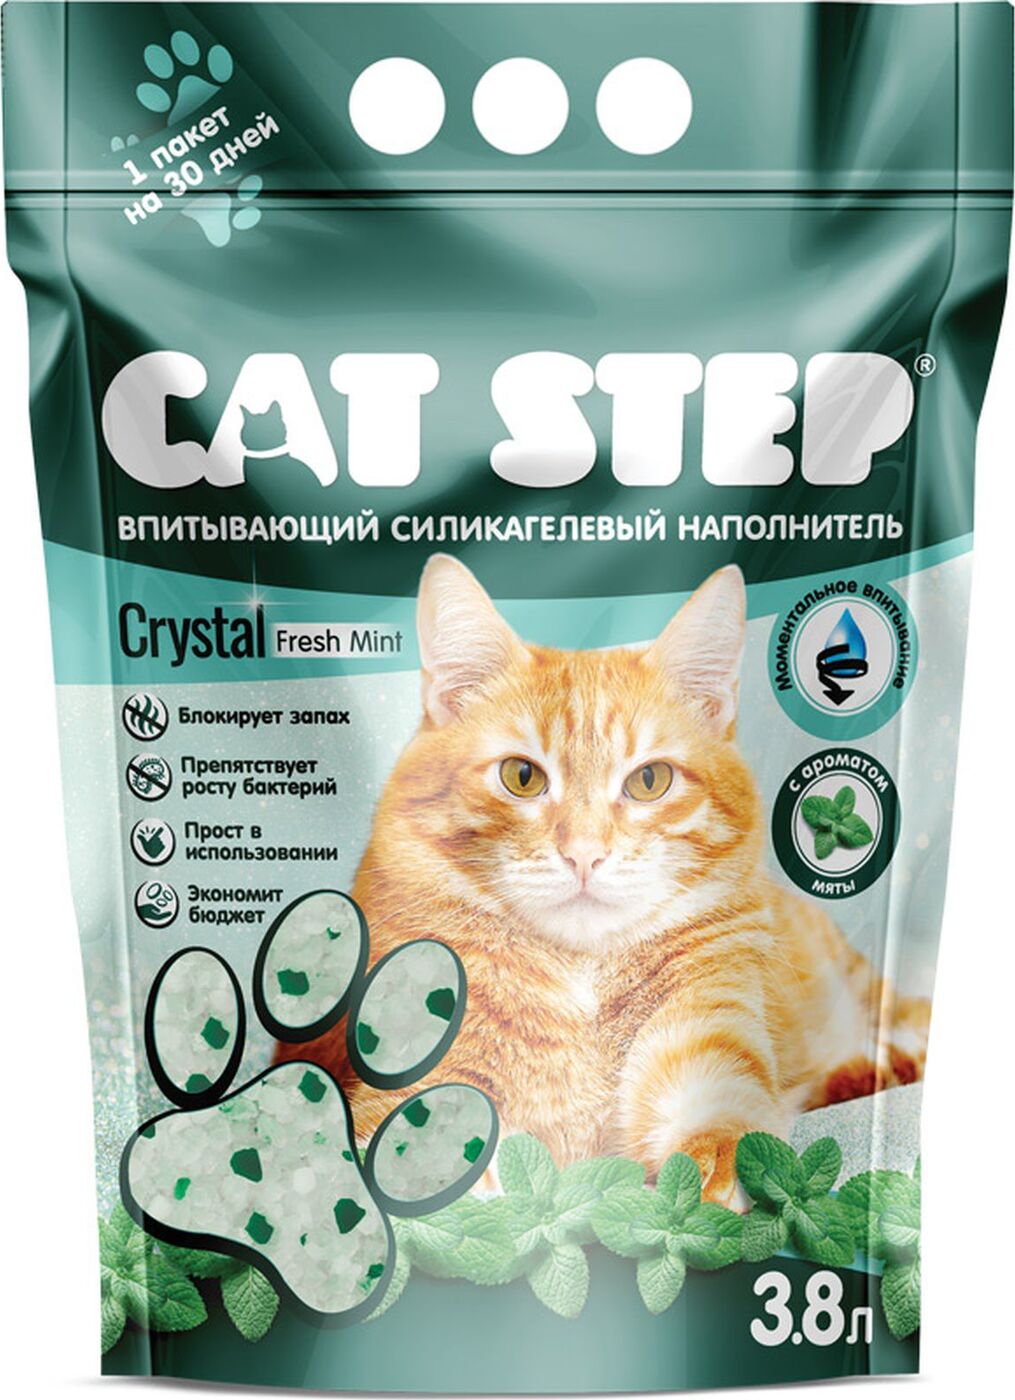 Впитывающий наполнитель для кошек Cat Step Crystal Fresh силикагелевый, мята, 1.67кг, 3.8л